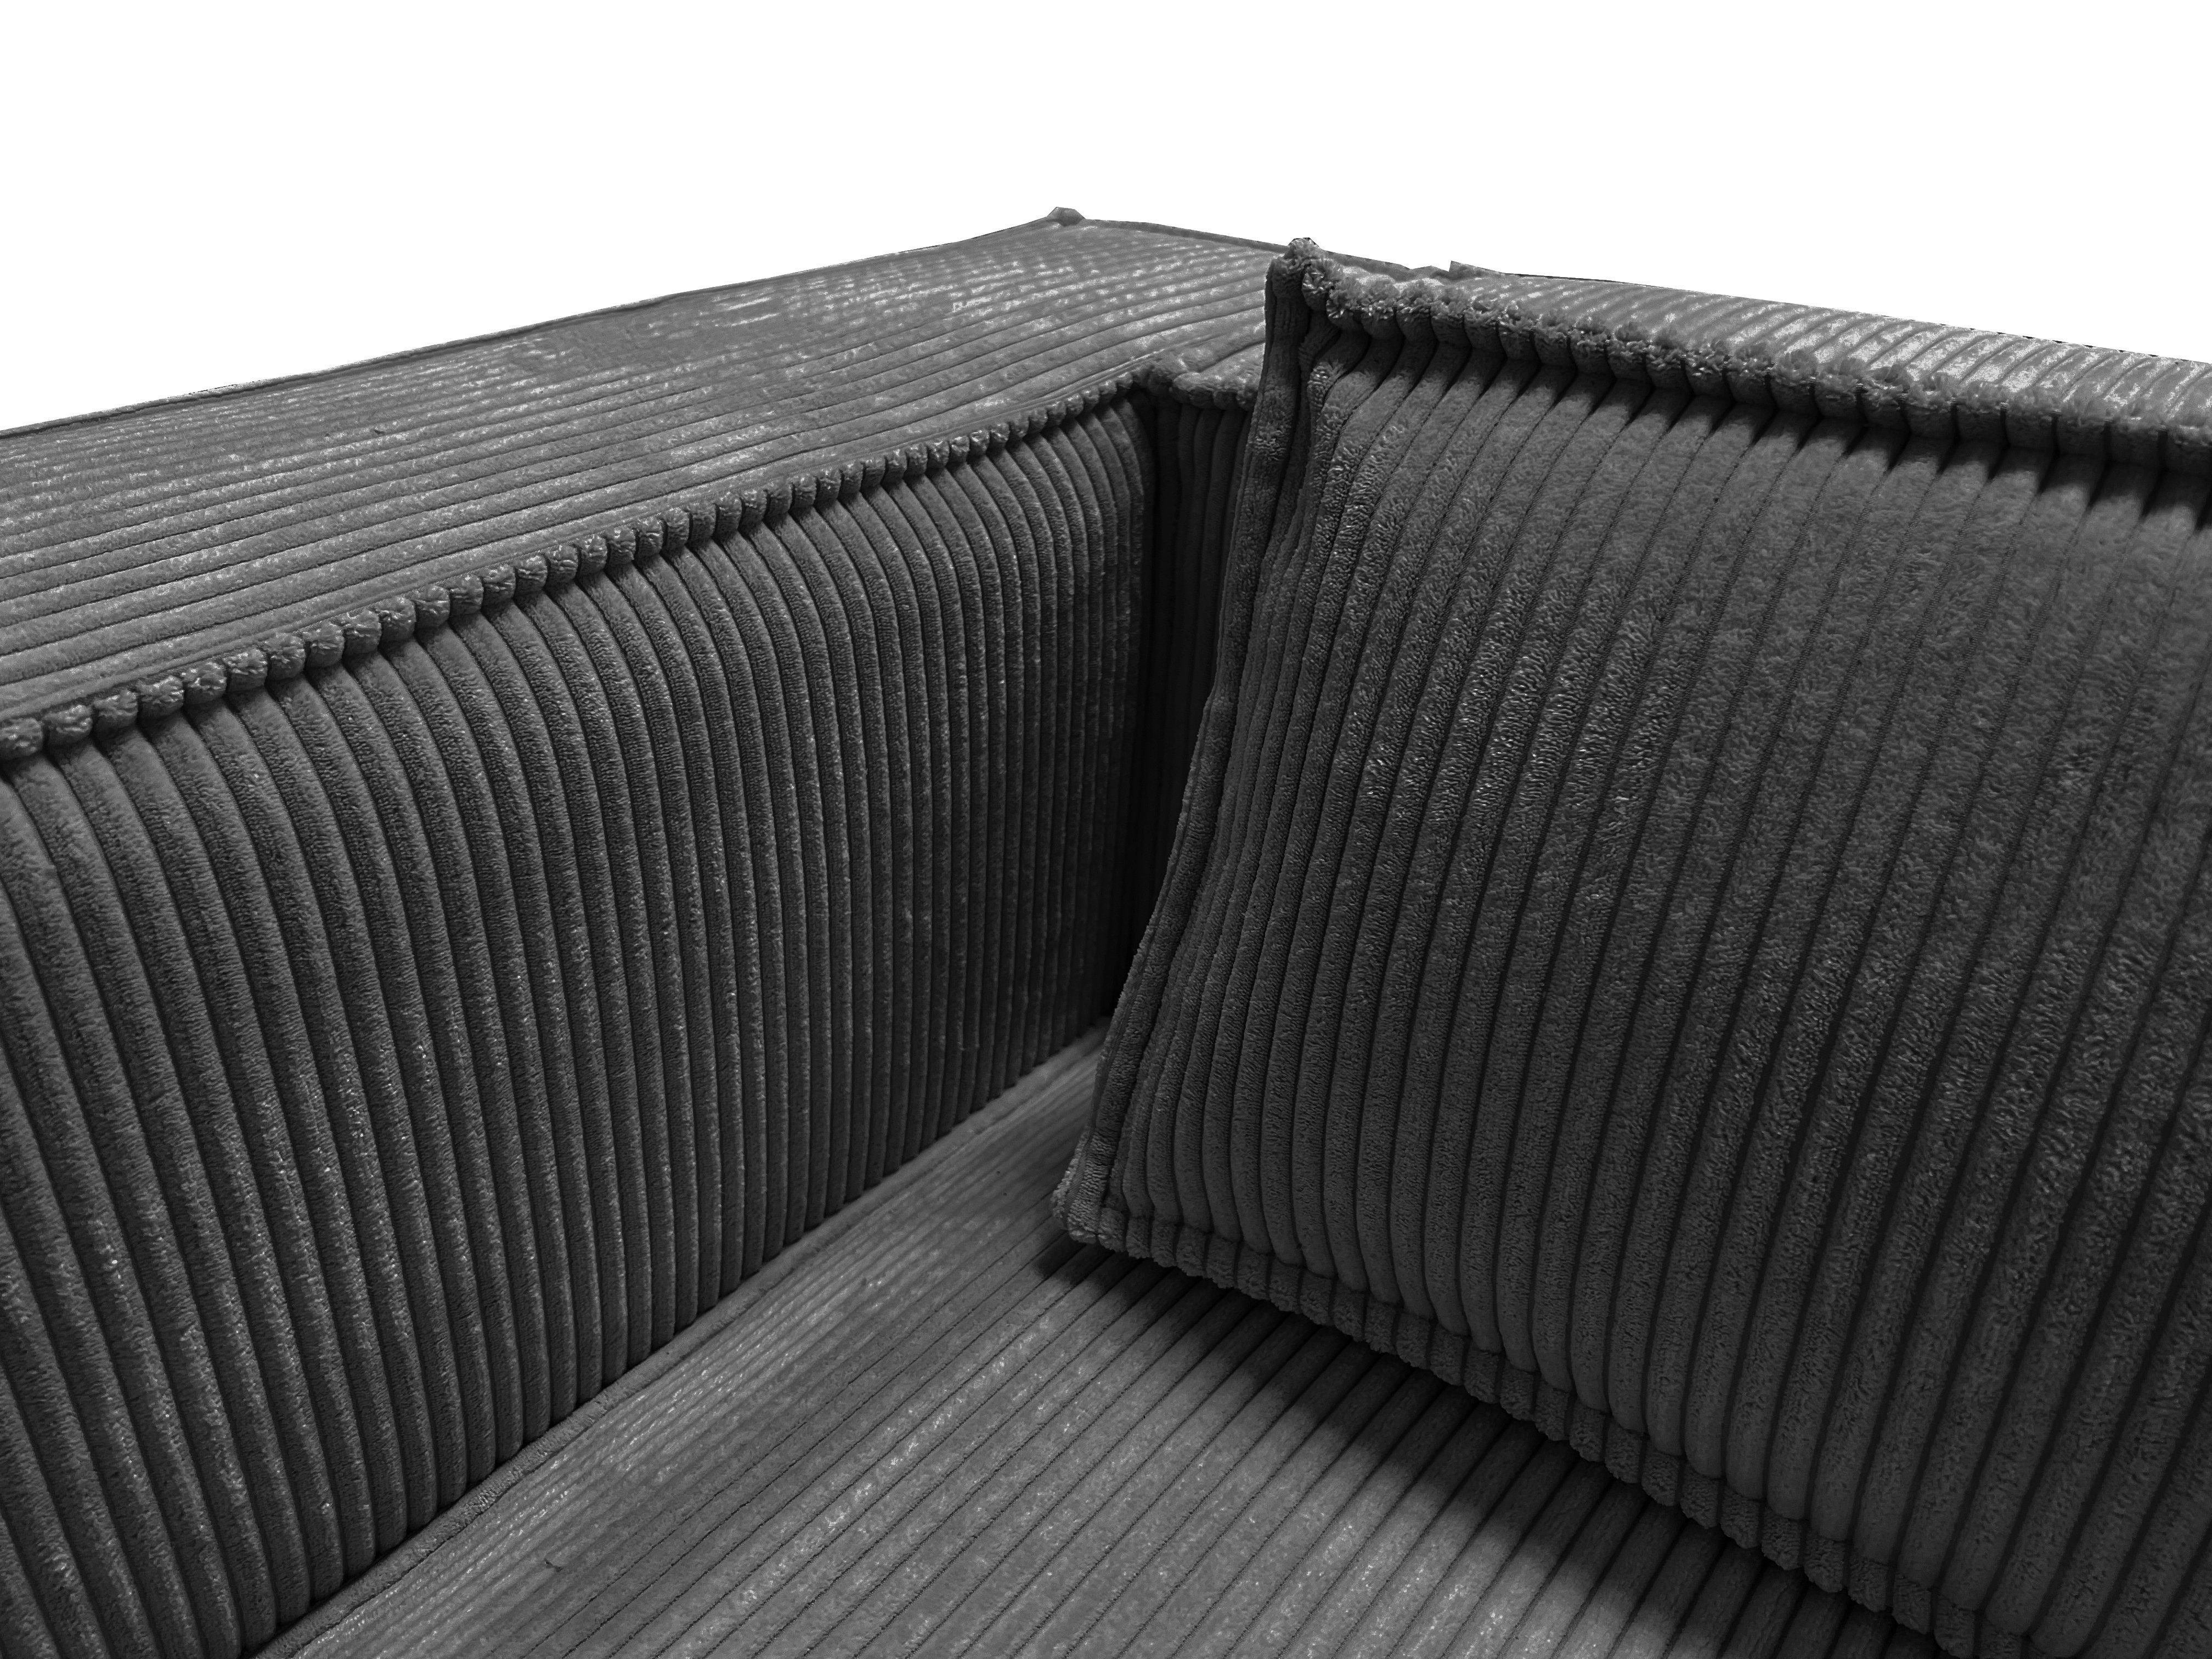 1 mit 2-Sitzer Wellenfederung Cord Sofa Möbel Renne, Teile, S-Style Grau